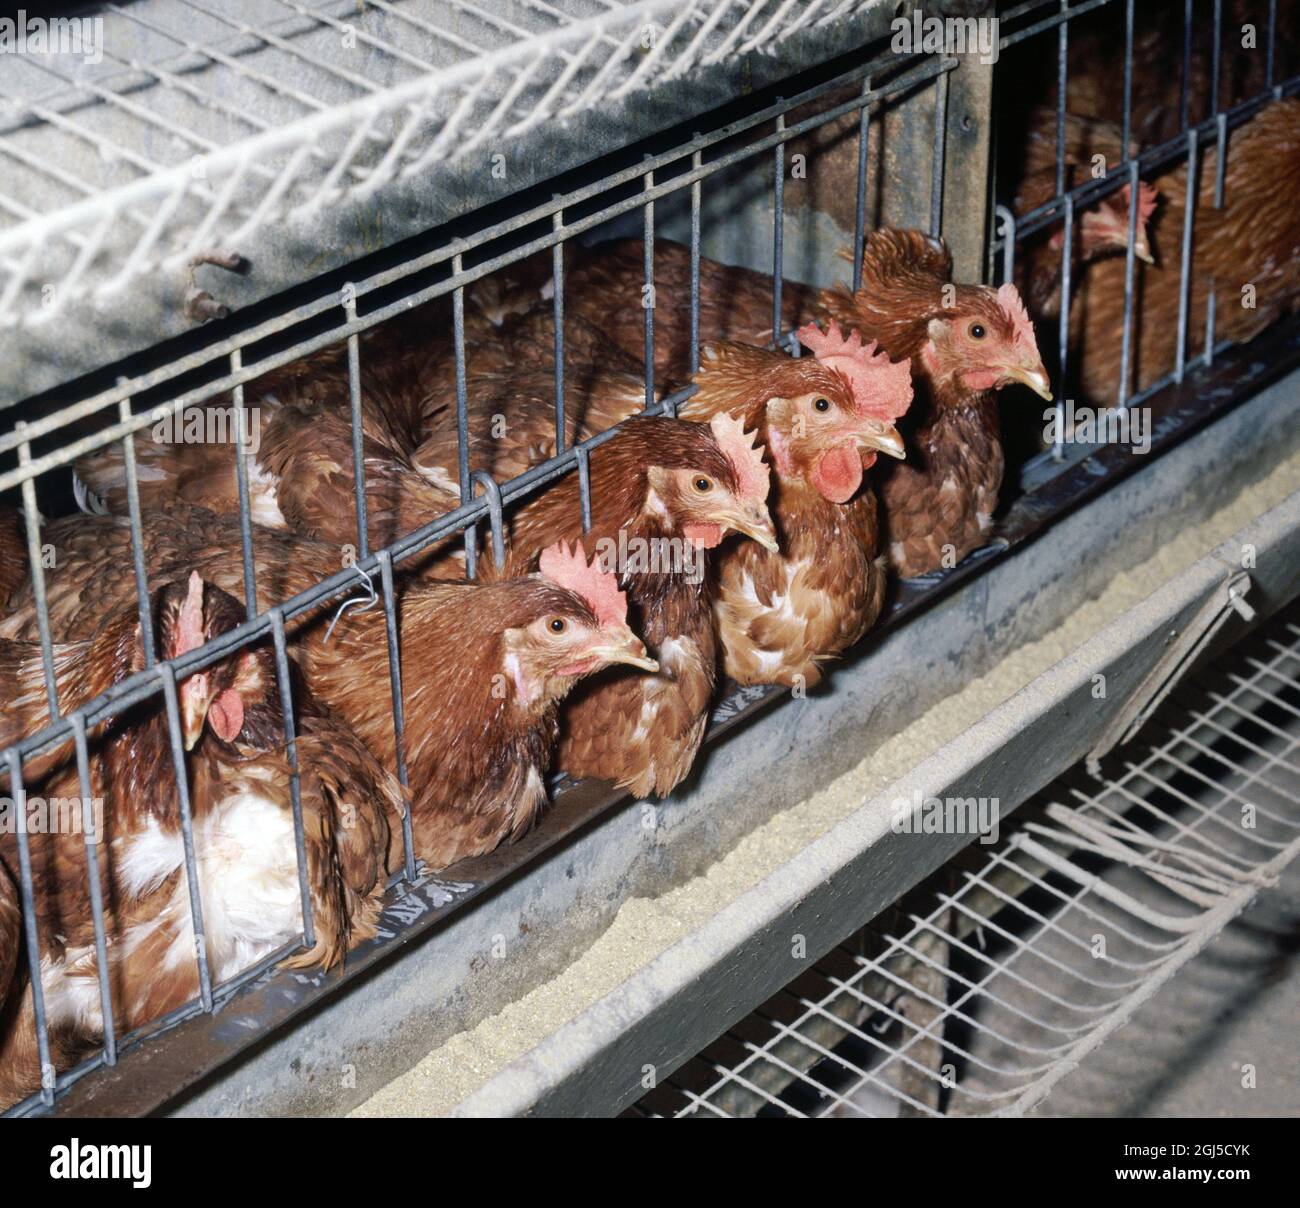 Poules en batterie (brun isa) poules pondeuses dans des cages confinées avec une certaine perte de plumes, montre l'accès à la cuvette d'alimentation Banque D'Images